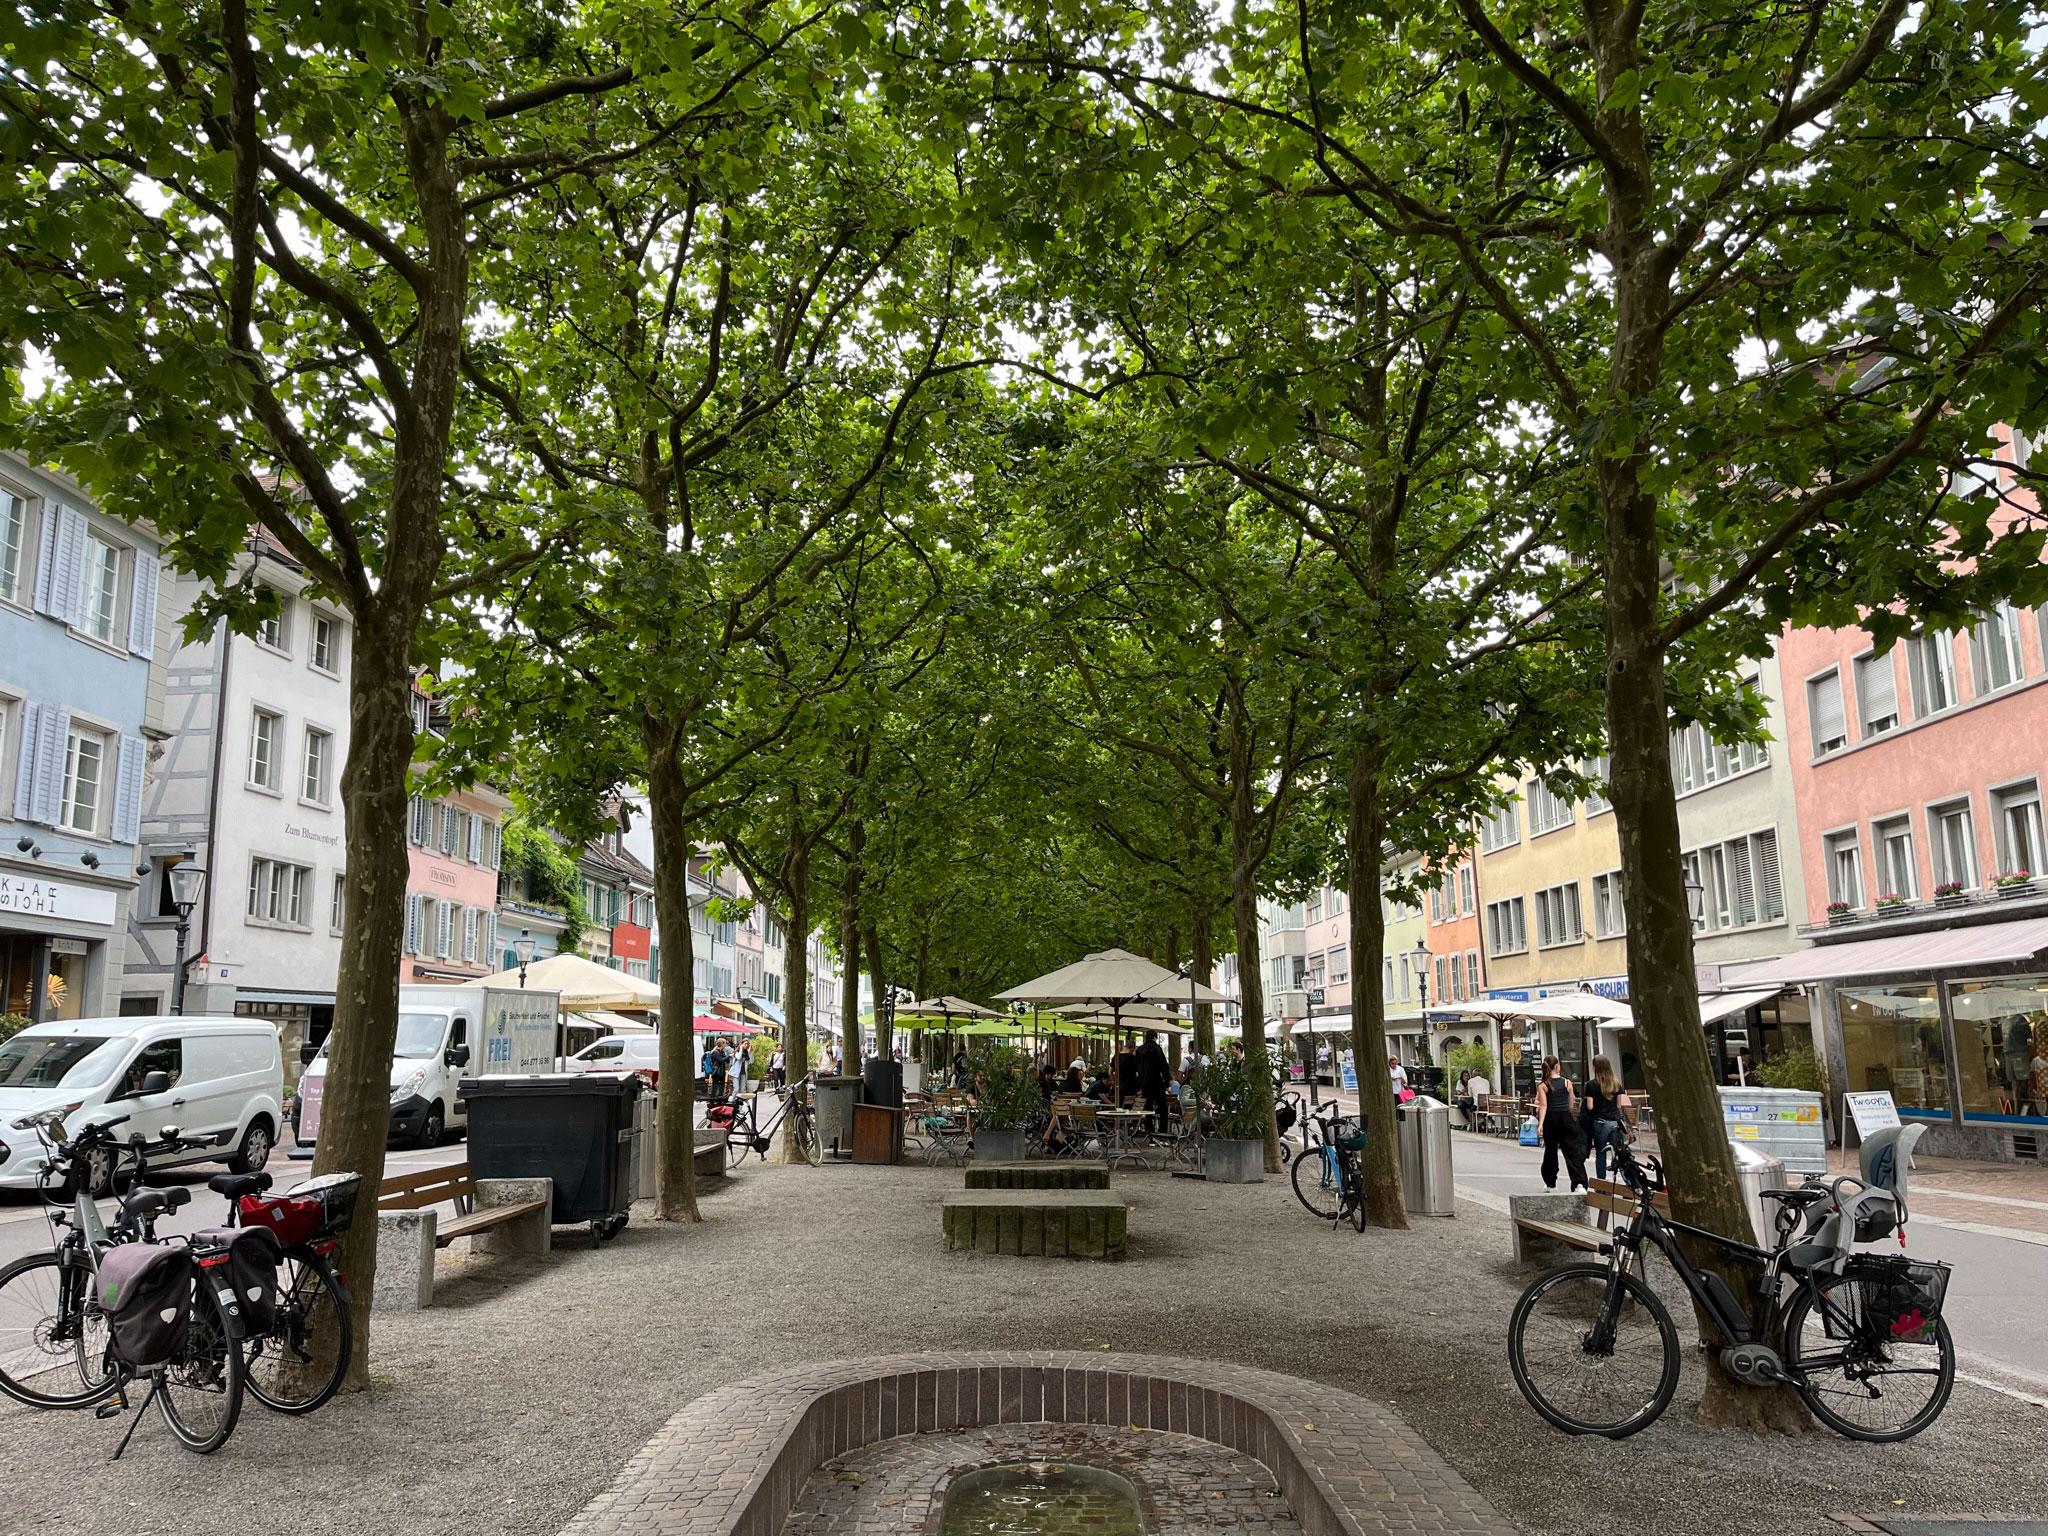 Das Foto zeigt eine zwei reihige Baumallee in der Mitte einer Fussgängerzone in der Innenstadt.  Unter den Bäumen hat es ein Strassencafé und verschiedene Sitzgelegenheiten. Der Boden ist mit Kies bedeckt. 